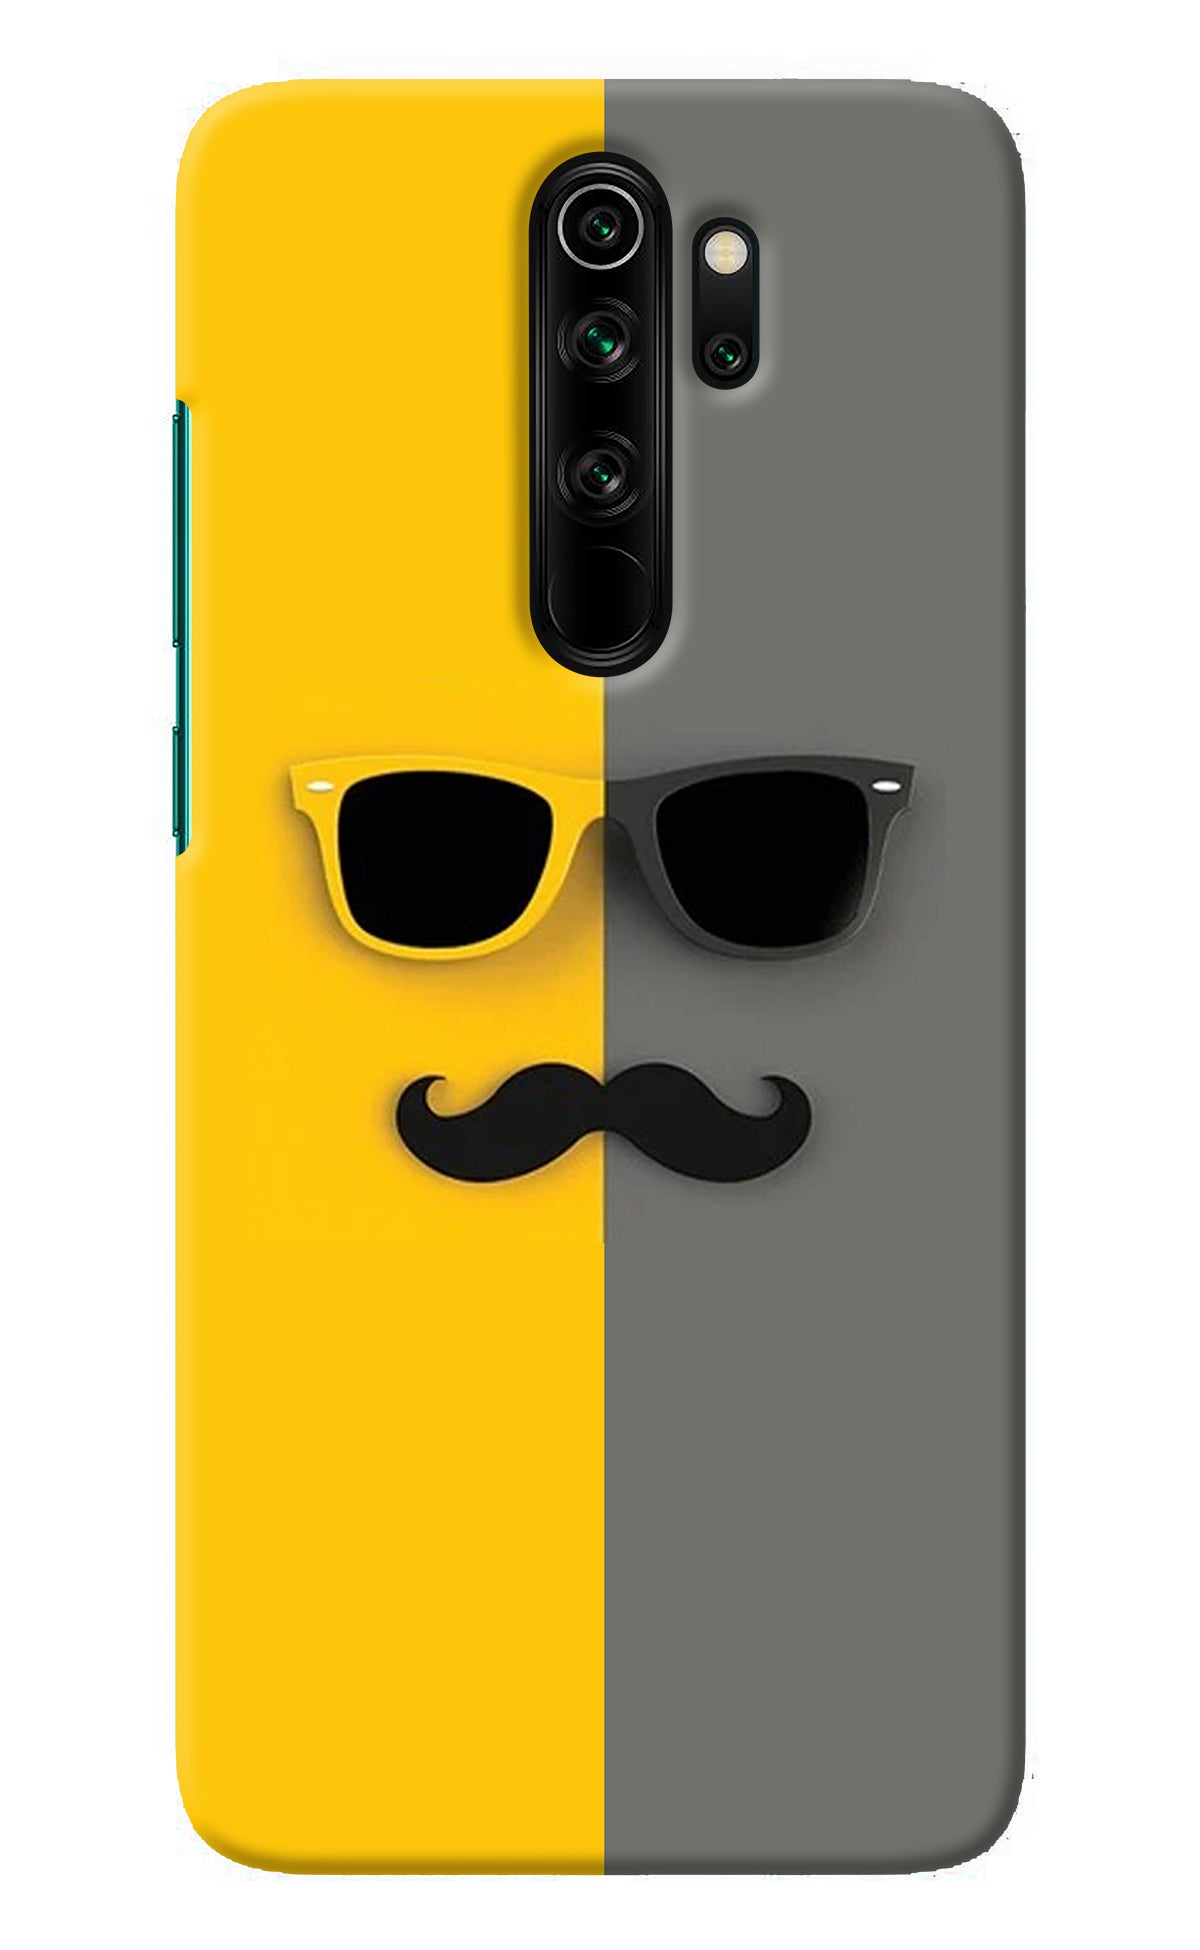 Sunglasses with Mustache Redmi Note 8 Pro Back Cover